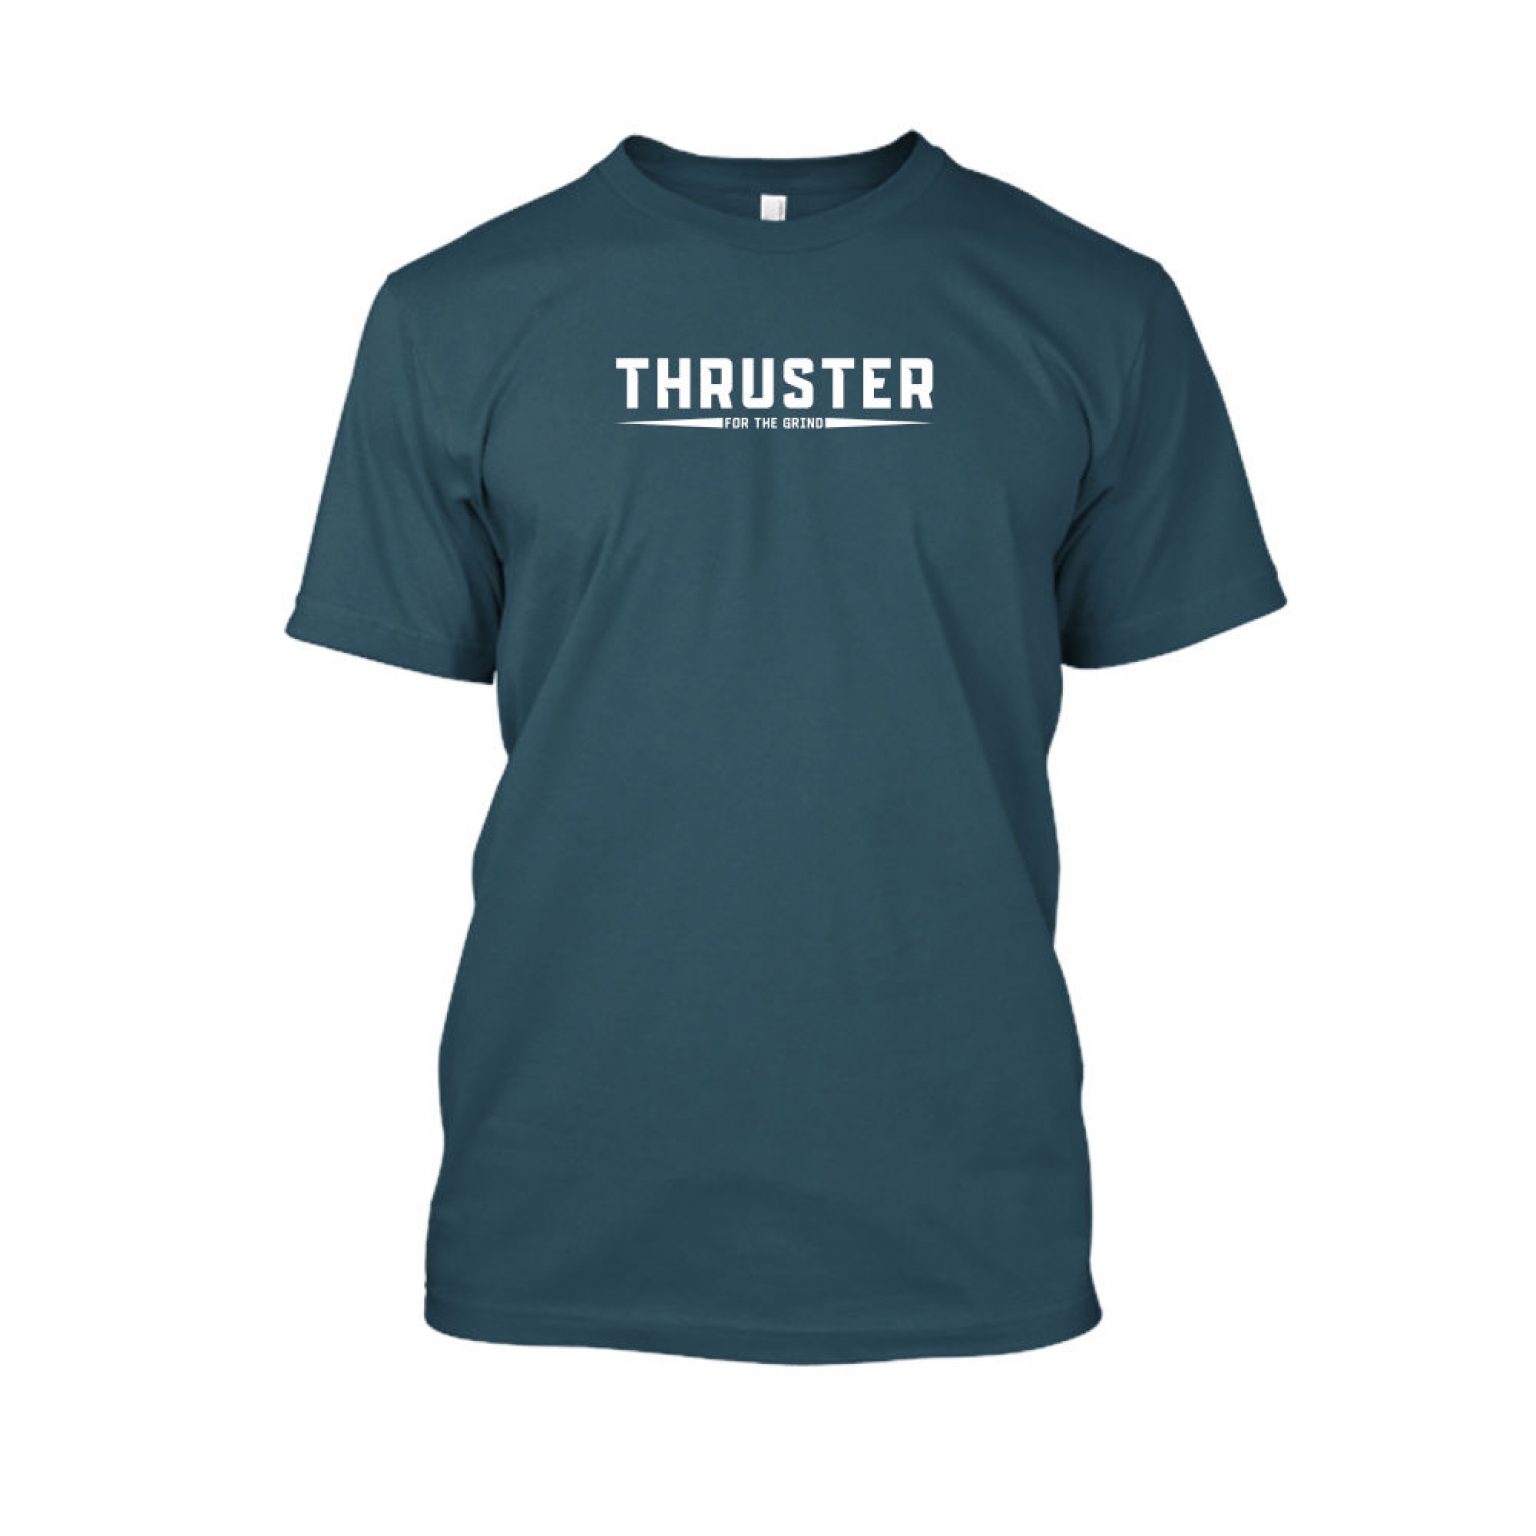 Thruster shirt herren navy